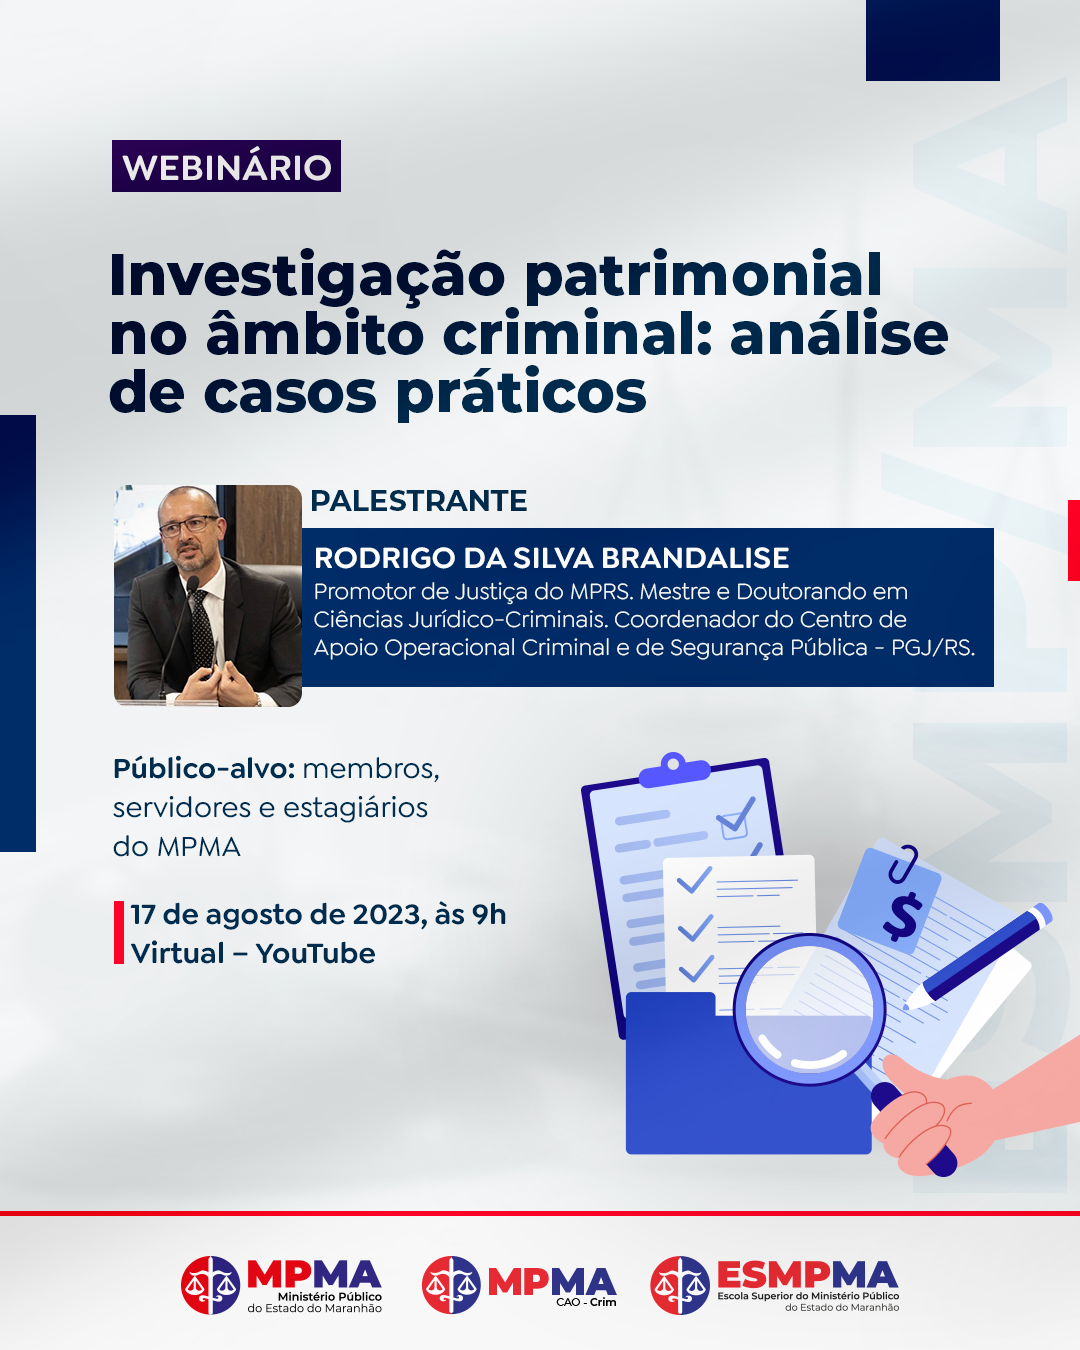 Webnário "Investigação patrimonial no âmbito criminal: análise de casos práticos"